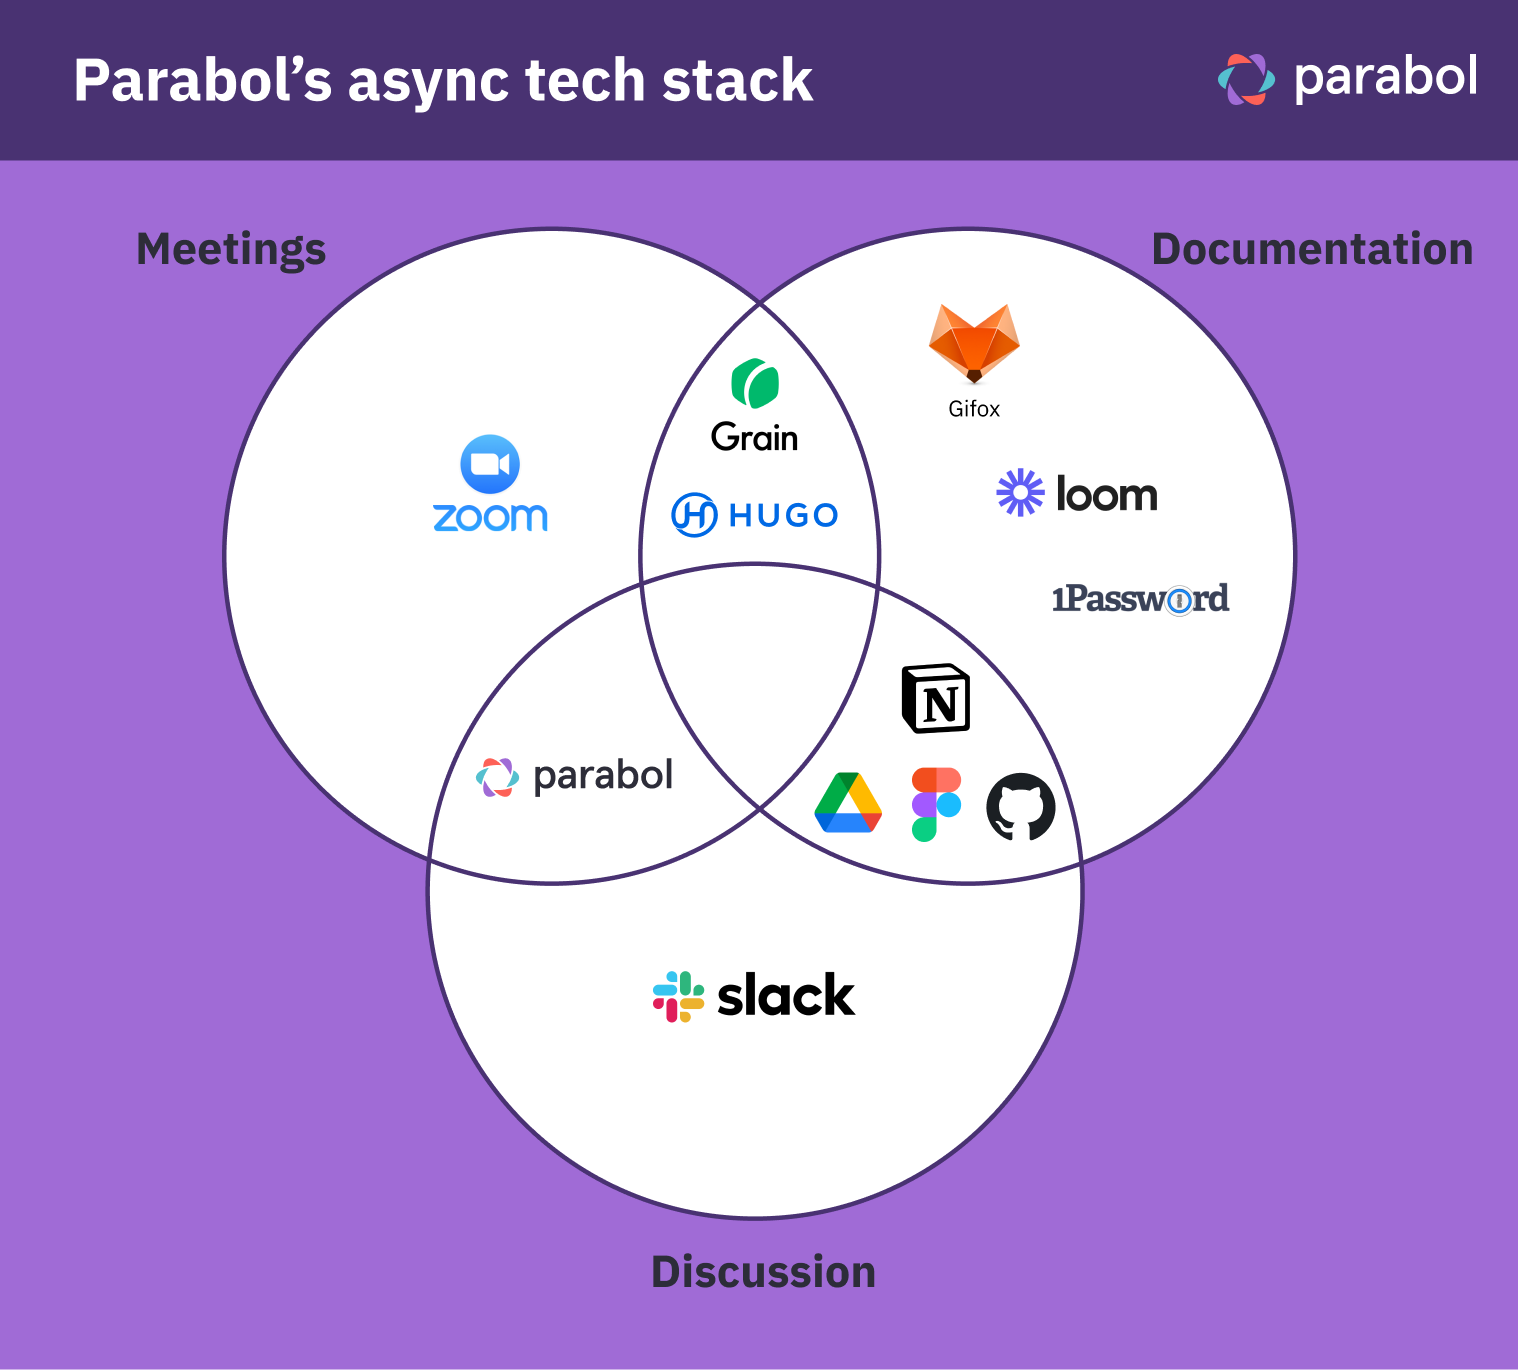 Parabols async tech stack